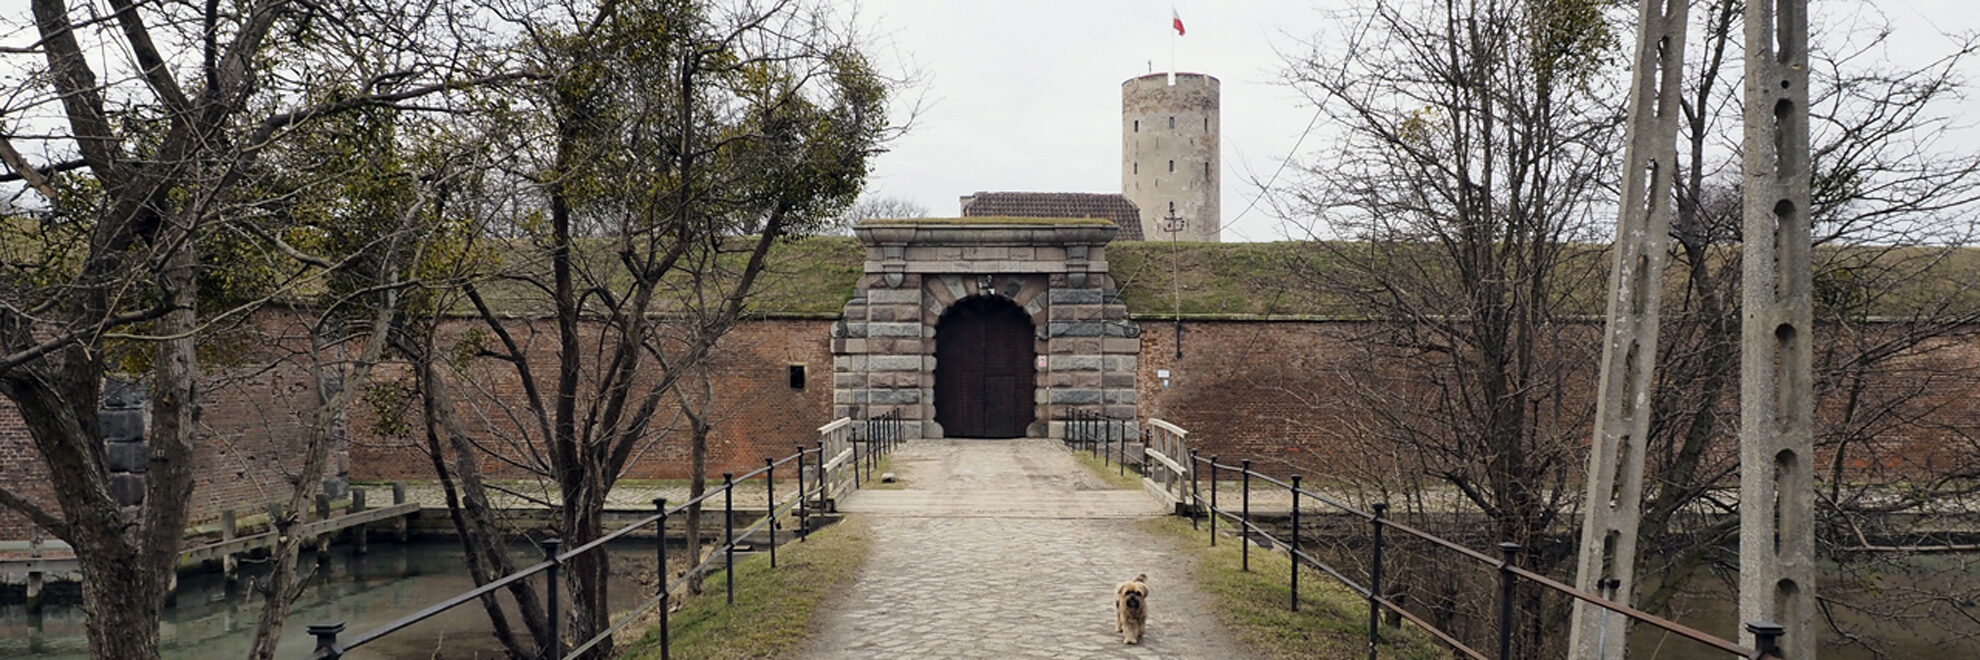 Gdańsk: Twierdza Wisłoujście <br>Danzig: Festung Weichselmünde